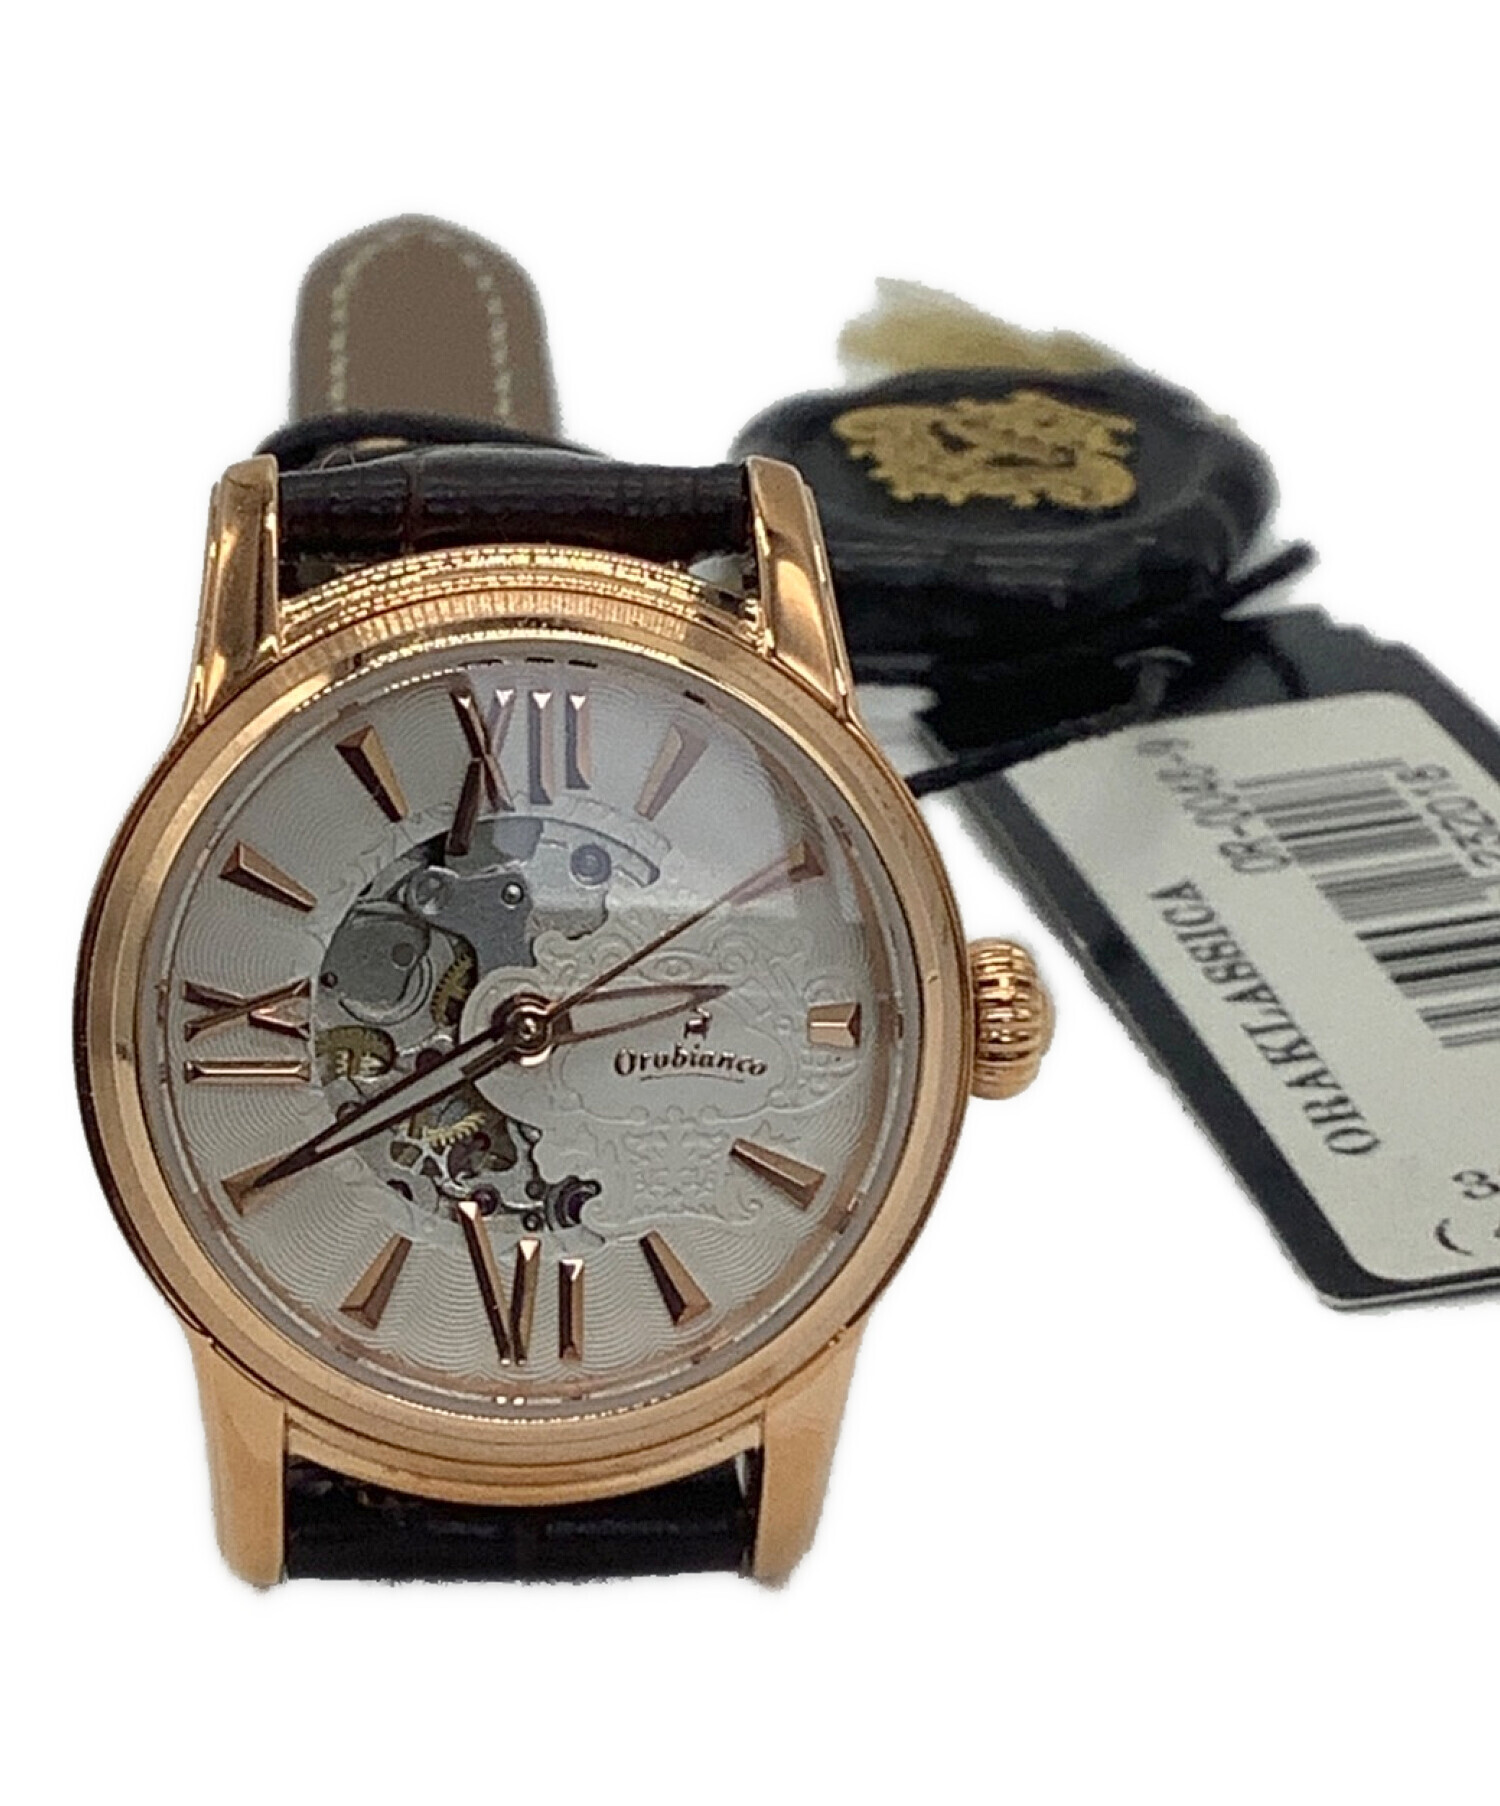 美品 オロビアンコ OR-0014 「テンポラーレ」 メンズ腕時計 - 時計